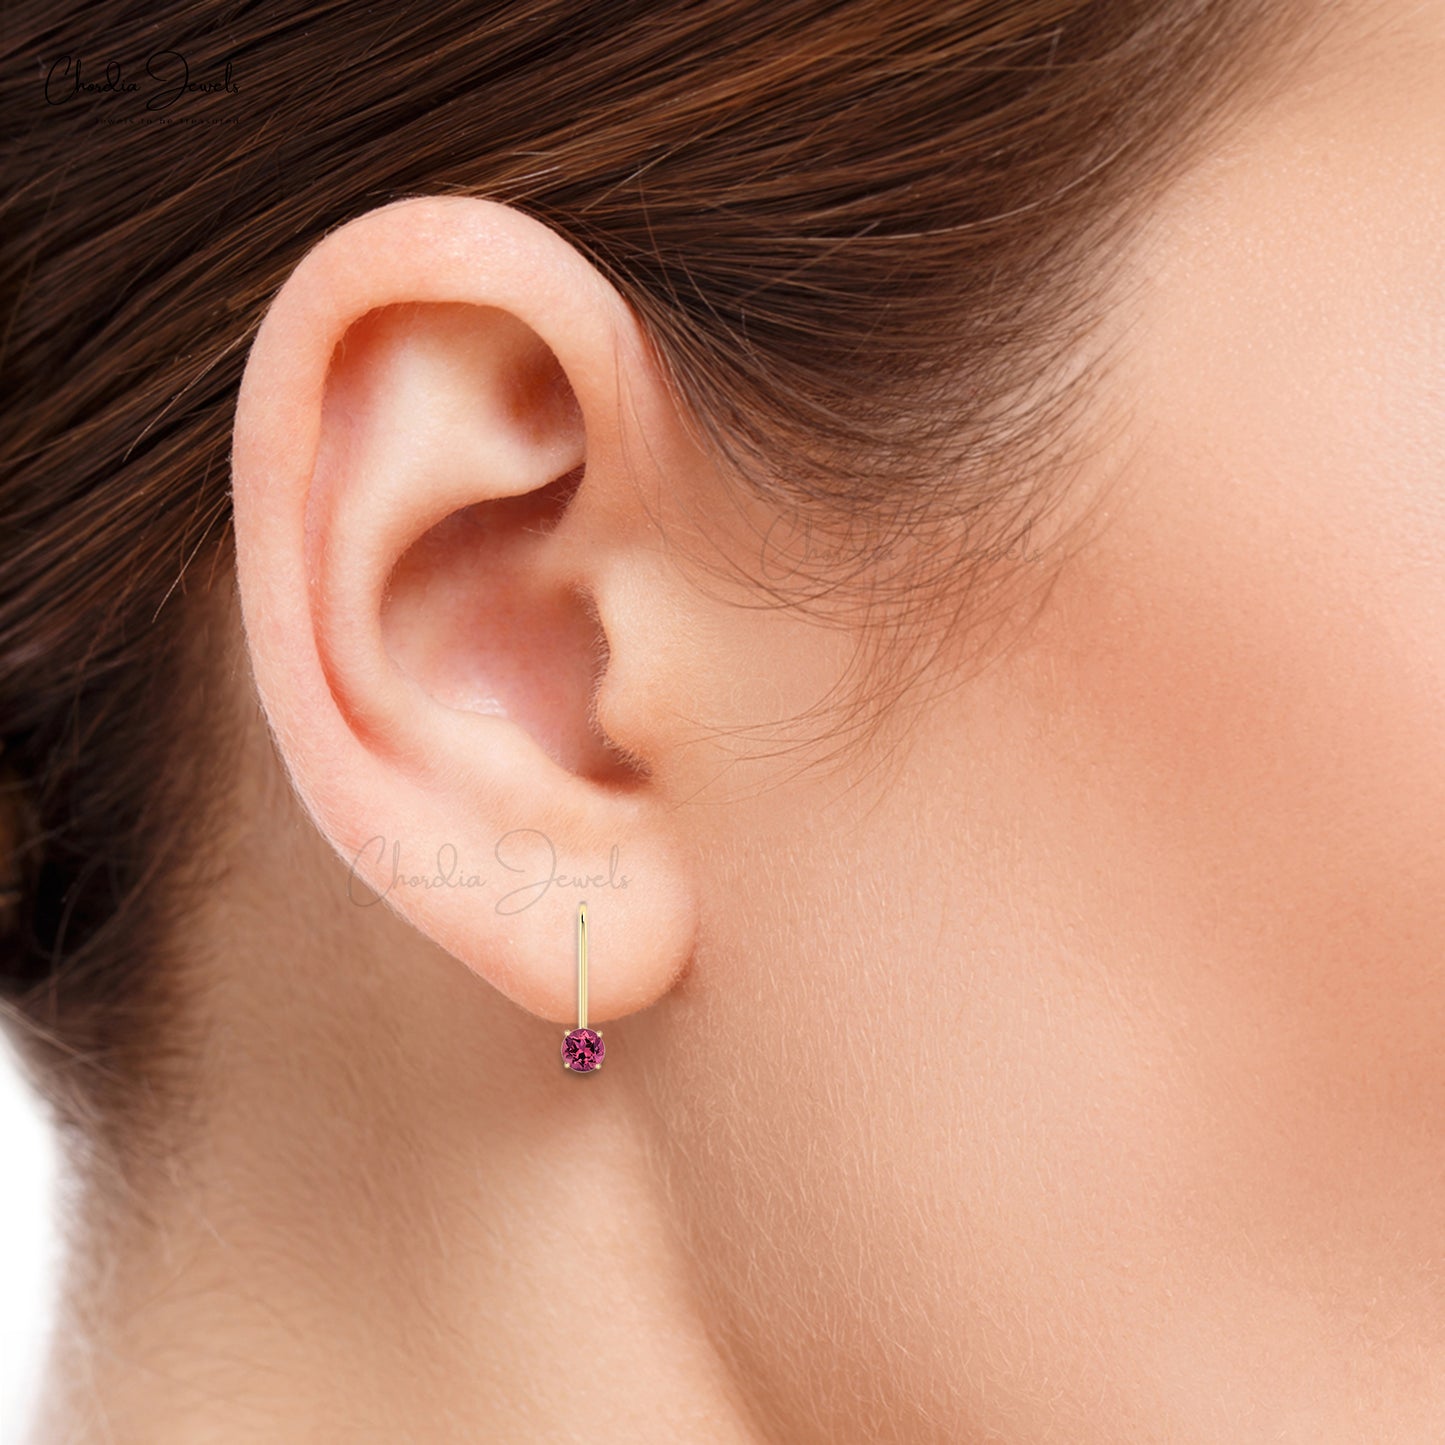 Hollow Rhombus / Triangle Design Stud Earrings Minimalist - Temu